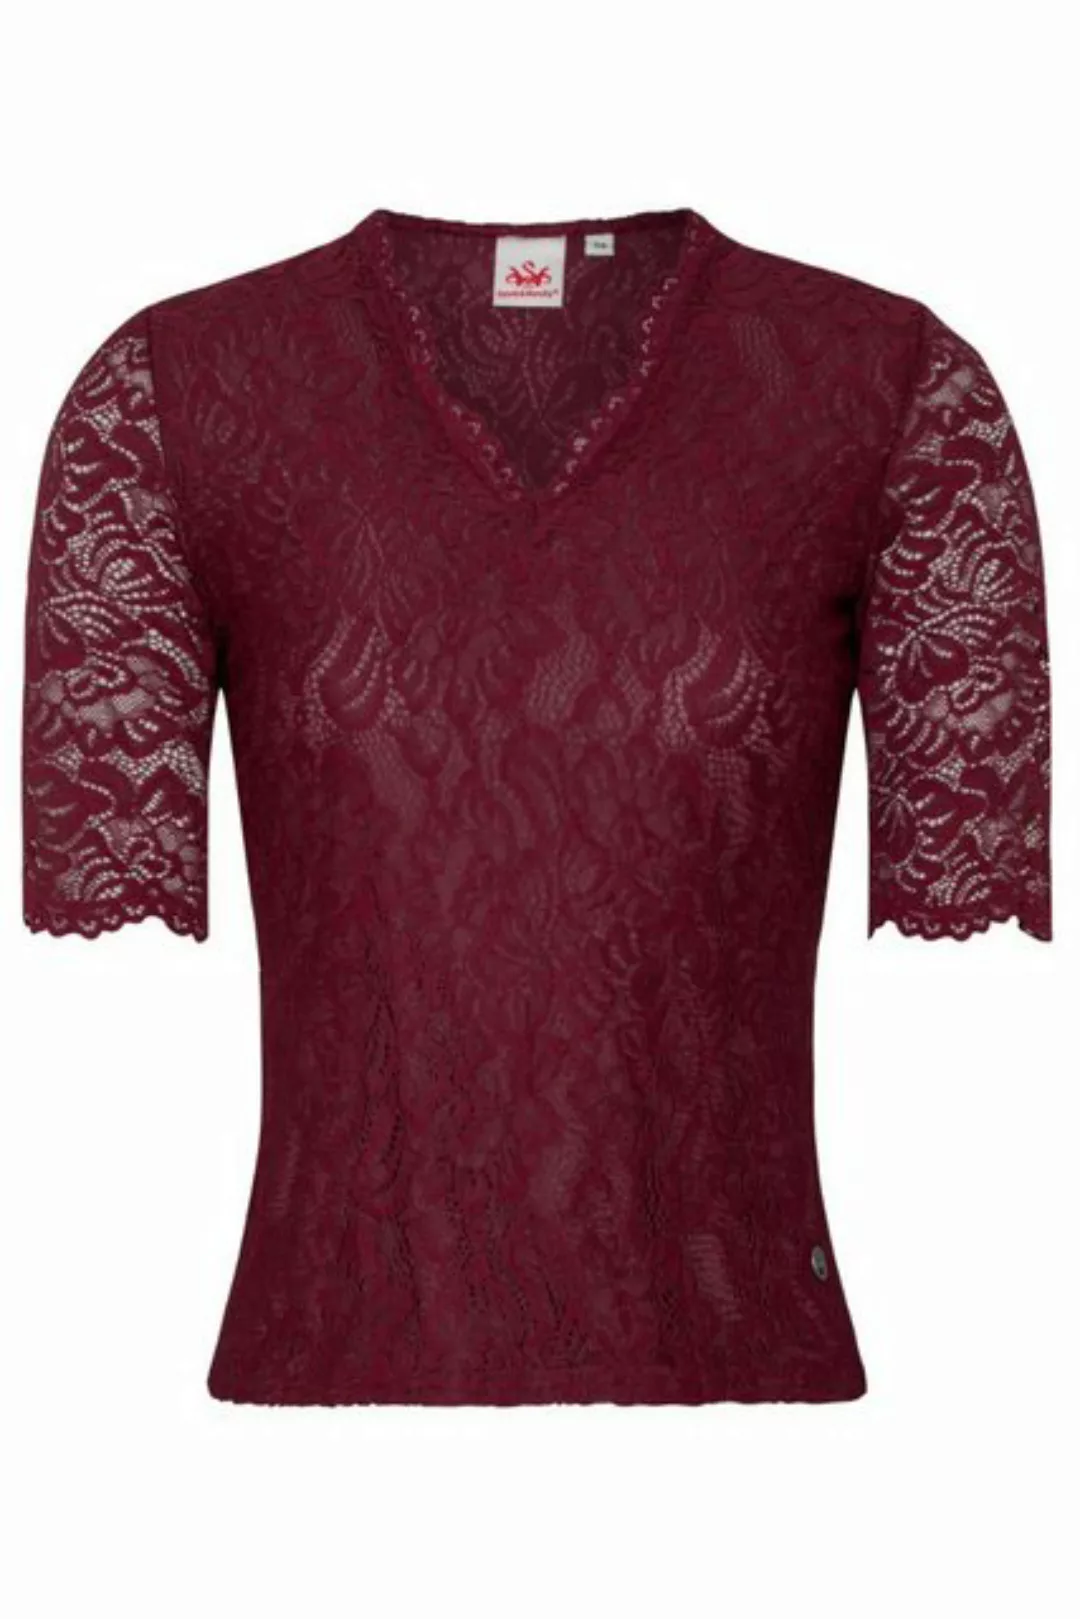 Spieth & Wensky Trachtenshirt Blusenshirt - ARKTIS - dunkelblau, dunkelrot günstig online kaufen